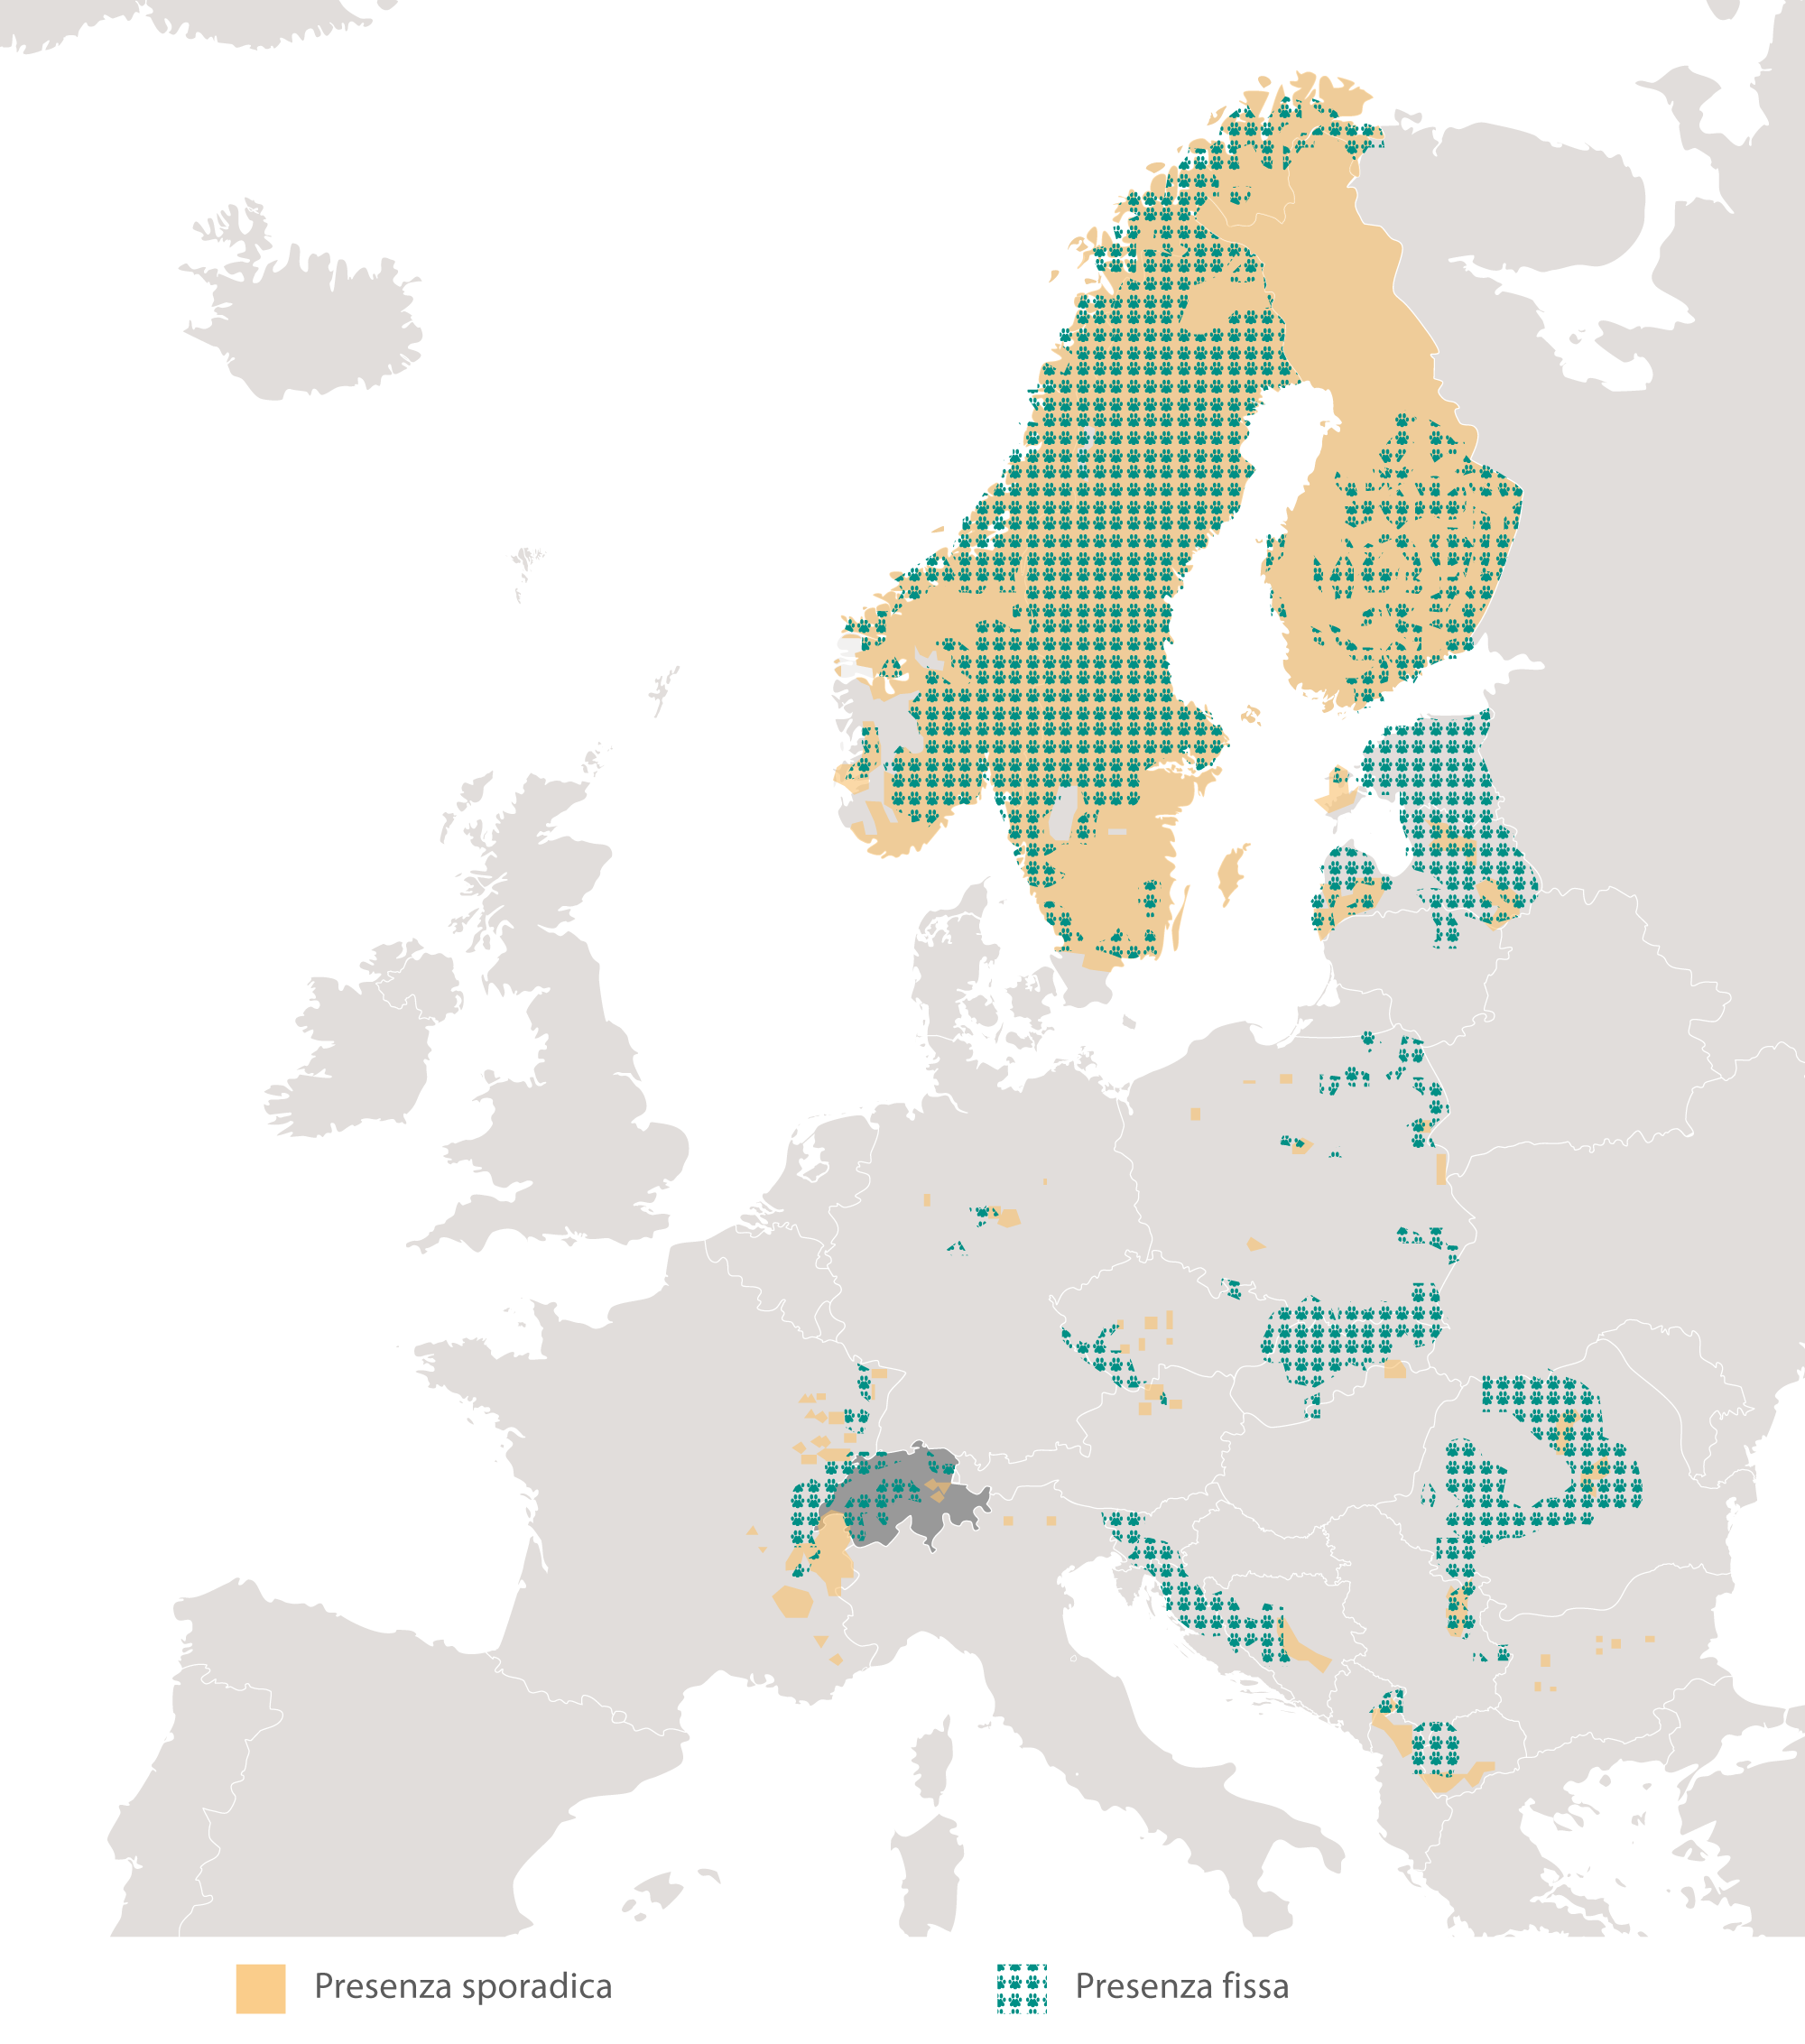 Ripartizione geografica della lince euroasiatica in Europa di 2012/2013. Fonte: Chapron et al. 2014.